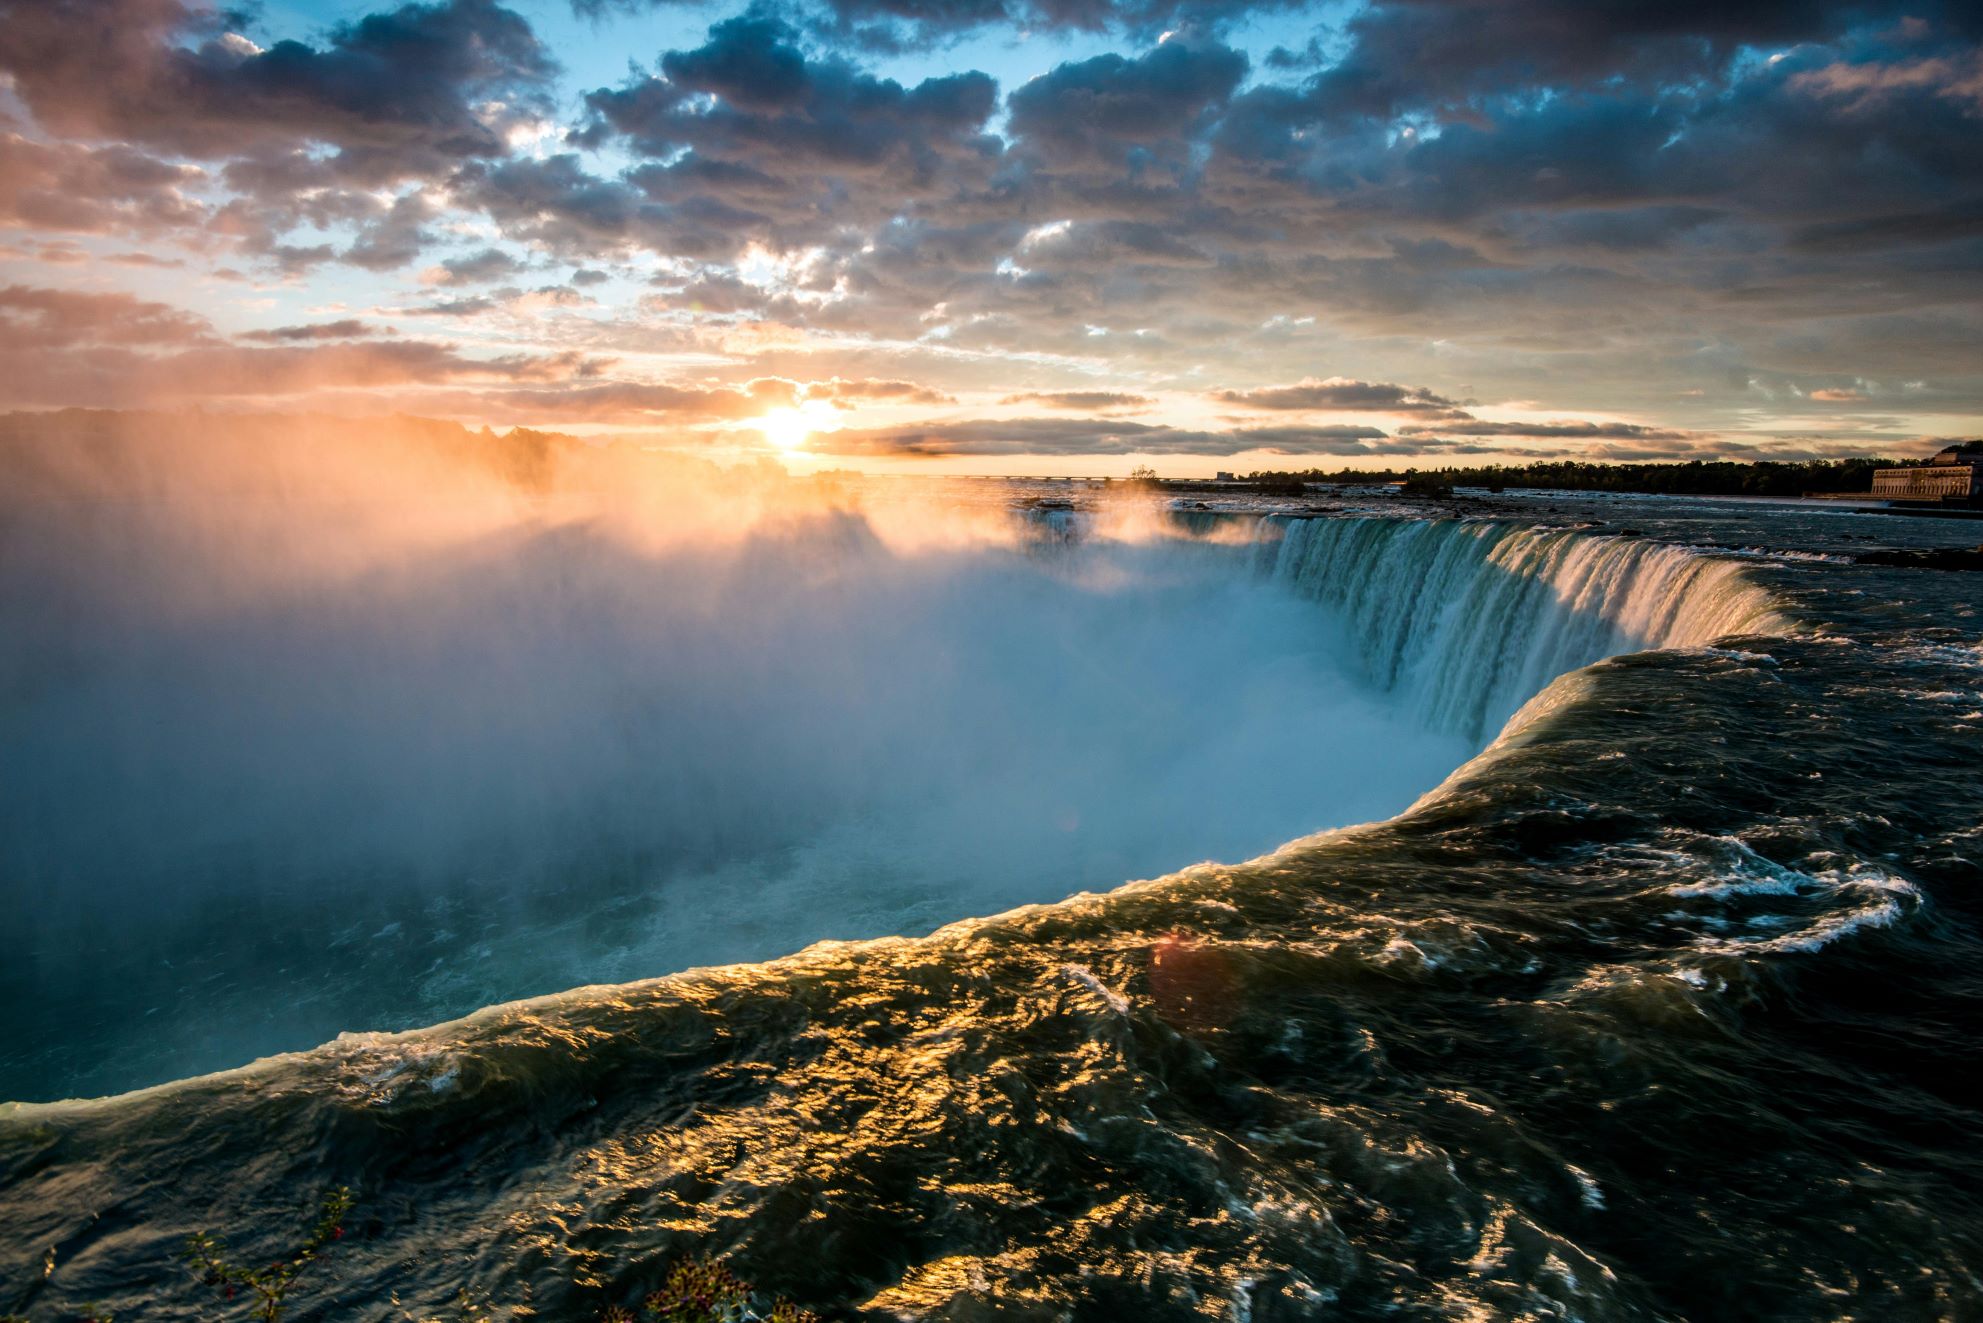 famous waterfall - Niagara Falls, contact